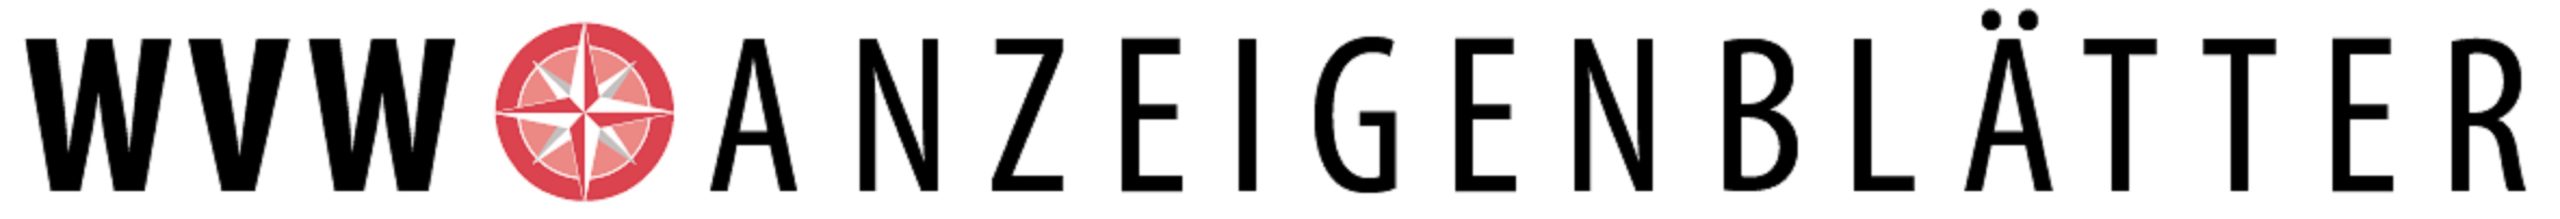 E-Paper WVW-Anzeigenblätter Logo